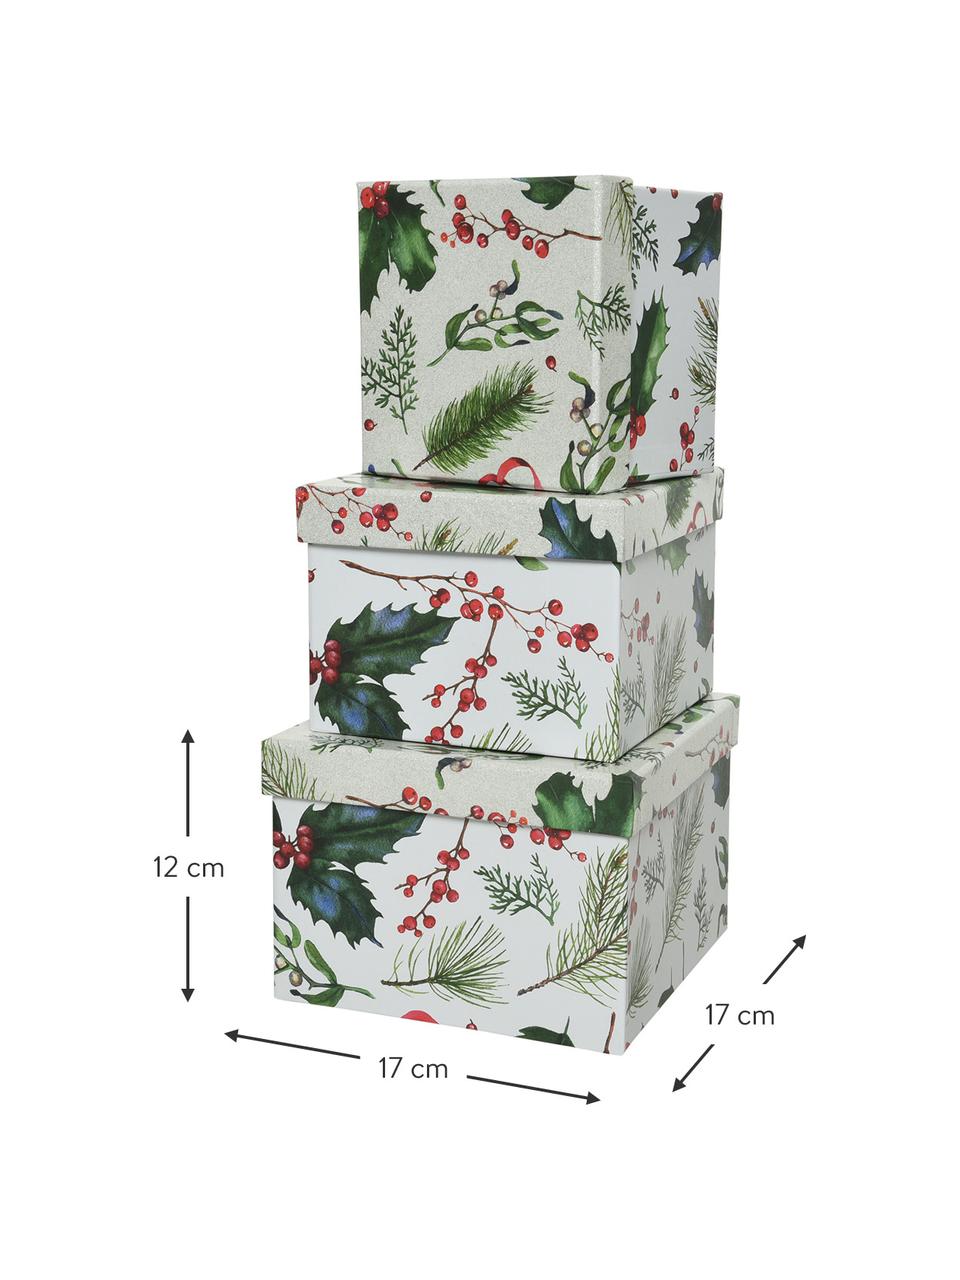 Súprava darčekových škatuliek Mistletoe, 3 diely, Papier, Biela, zelená, červená, Súprava s rôznymi veľkosťami